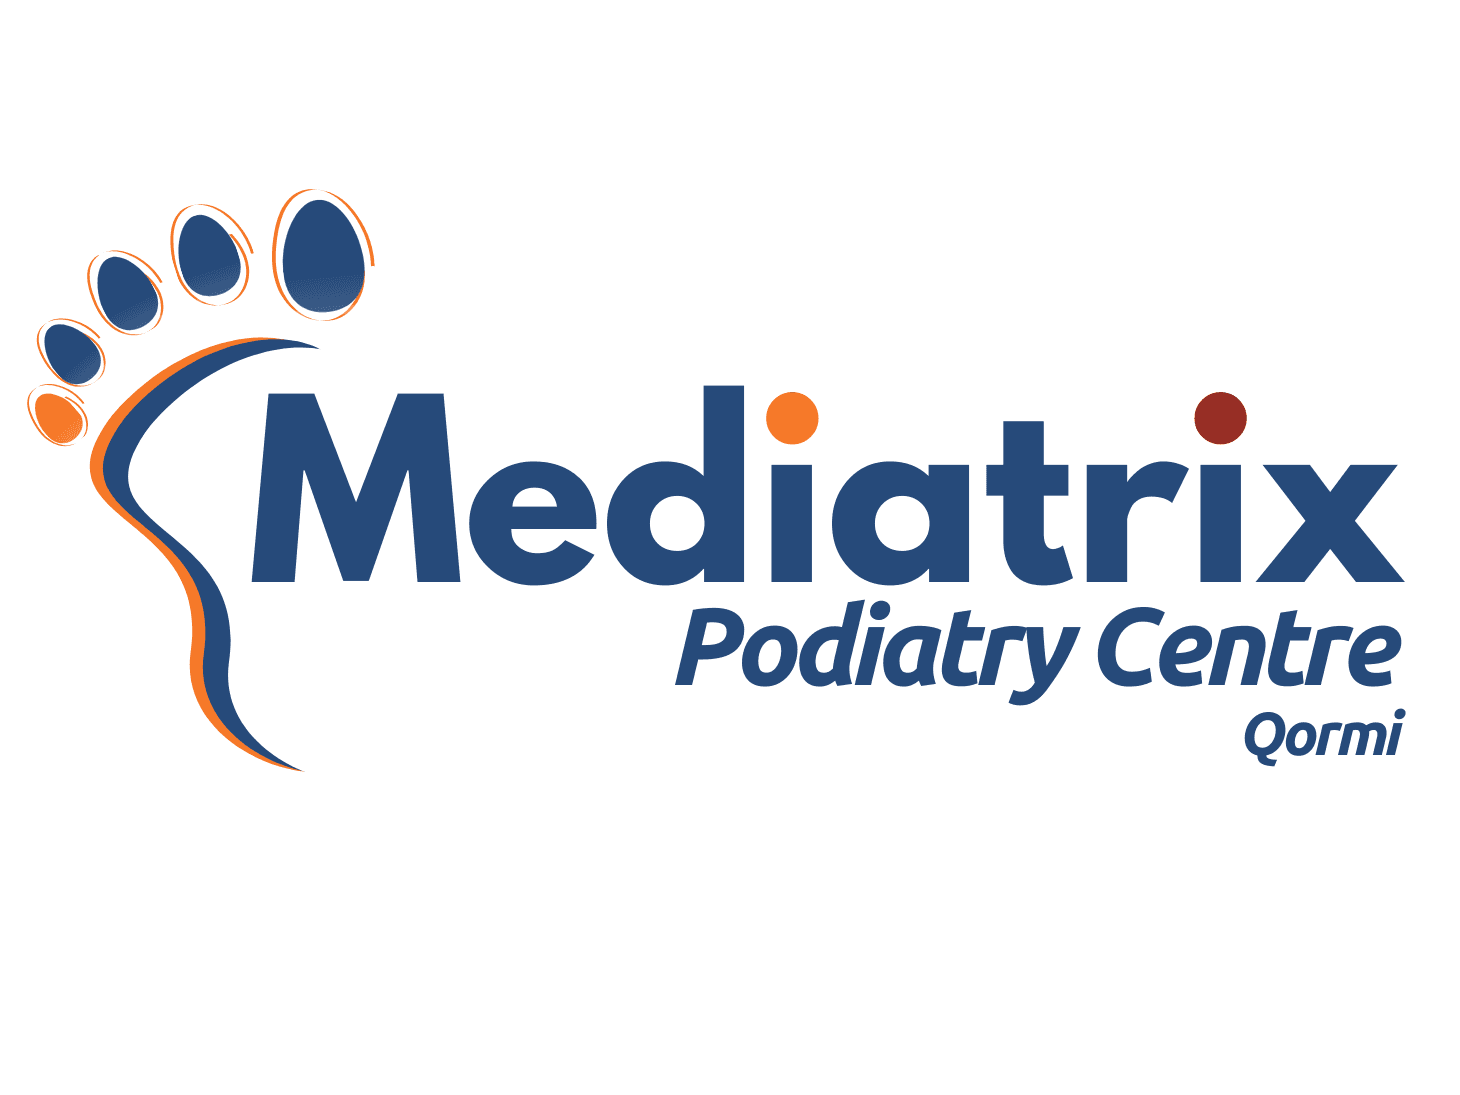 Mediatrix Podiatry Centre image